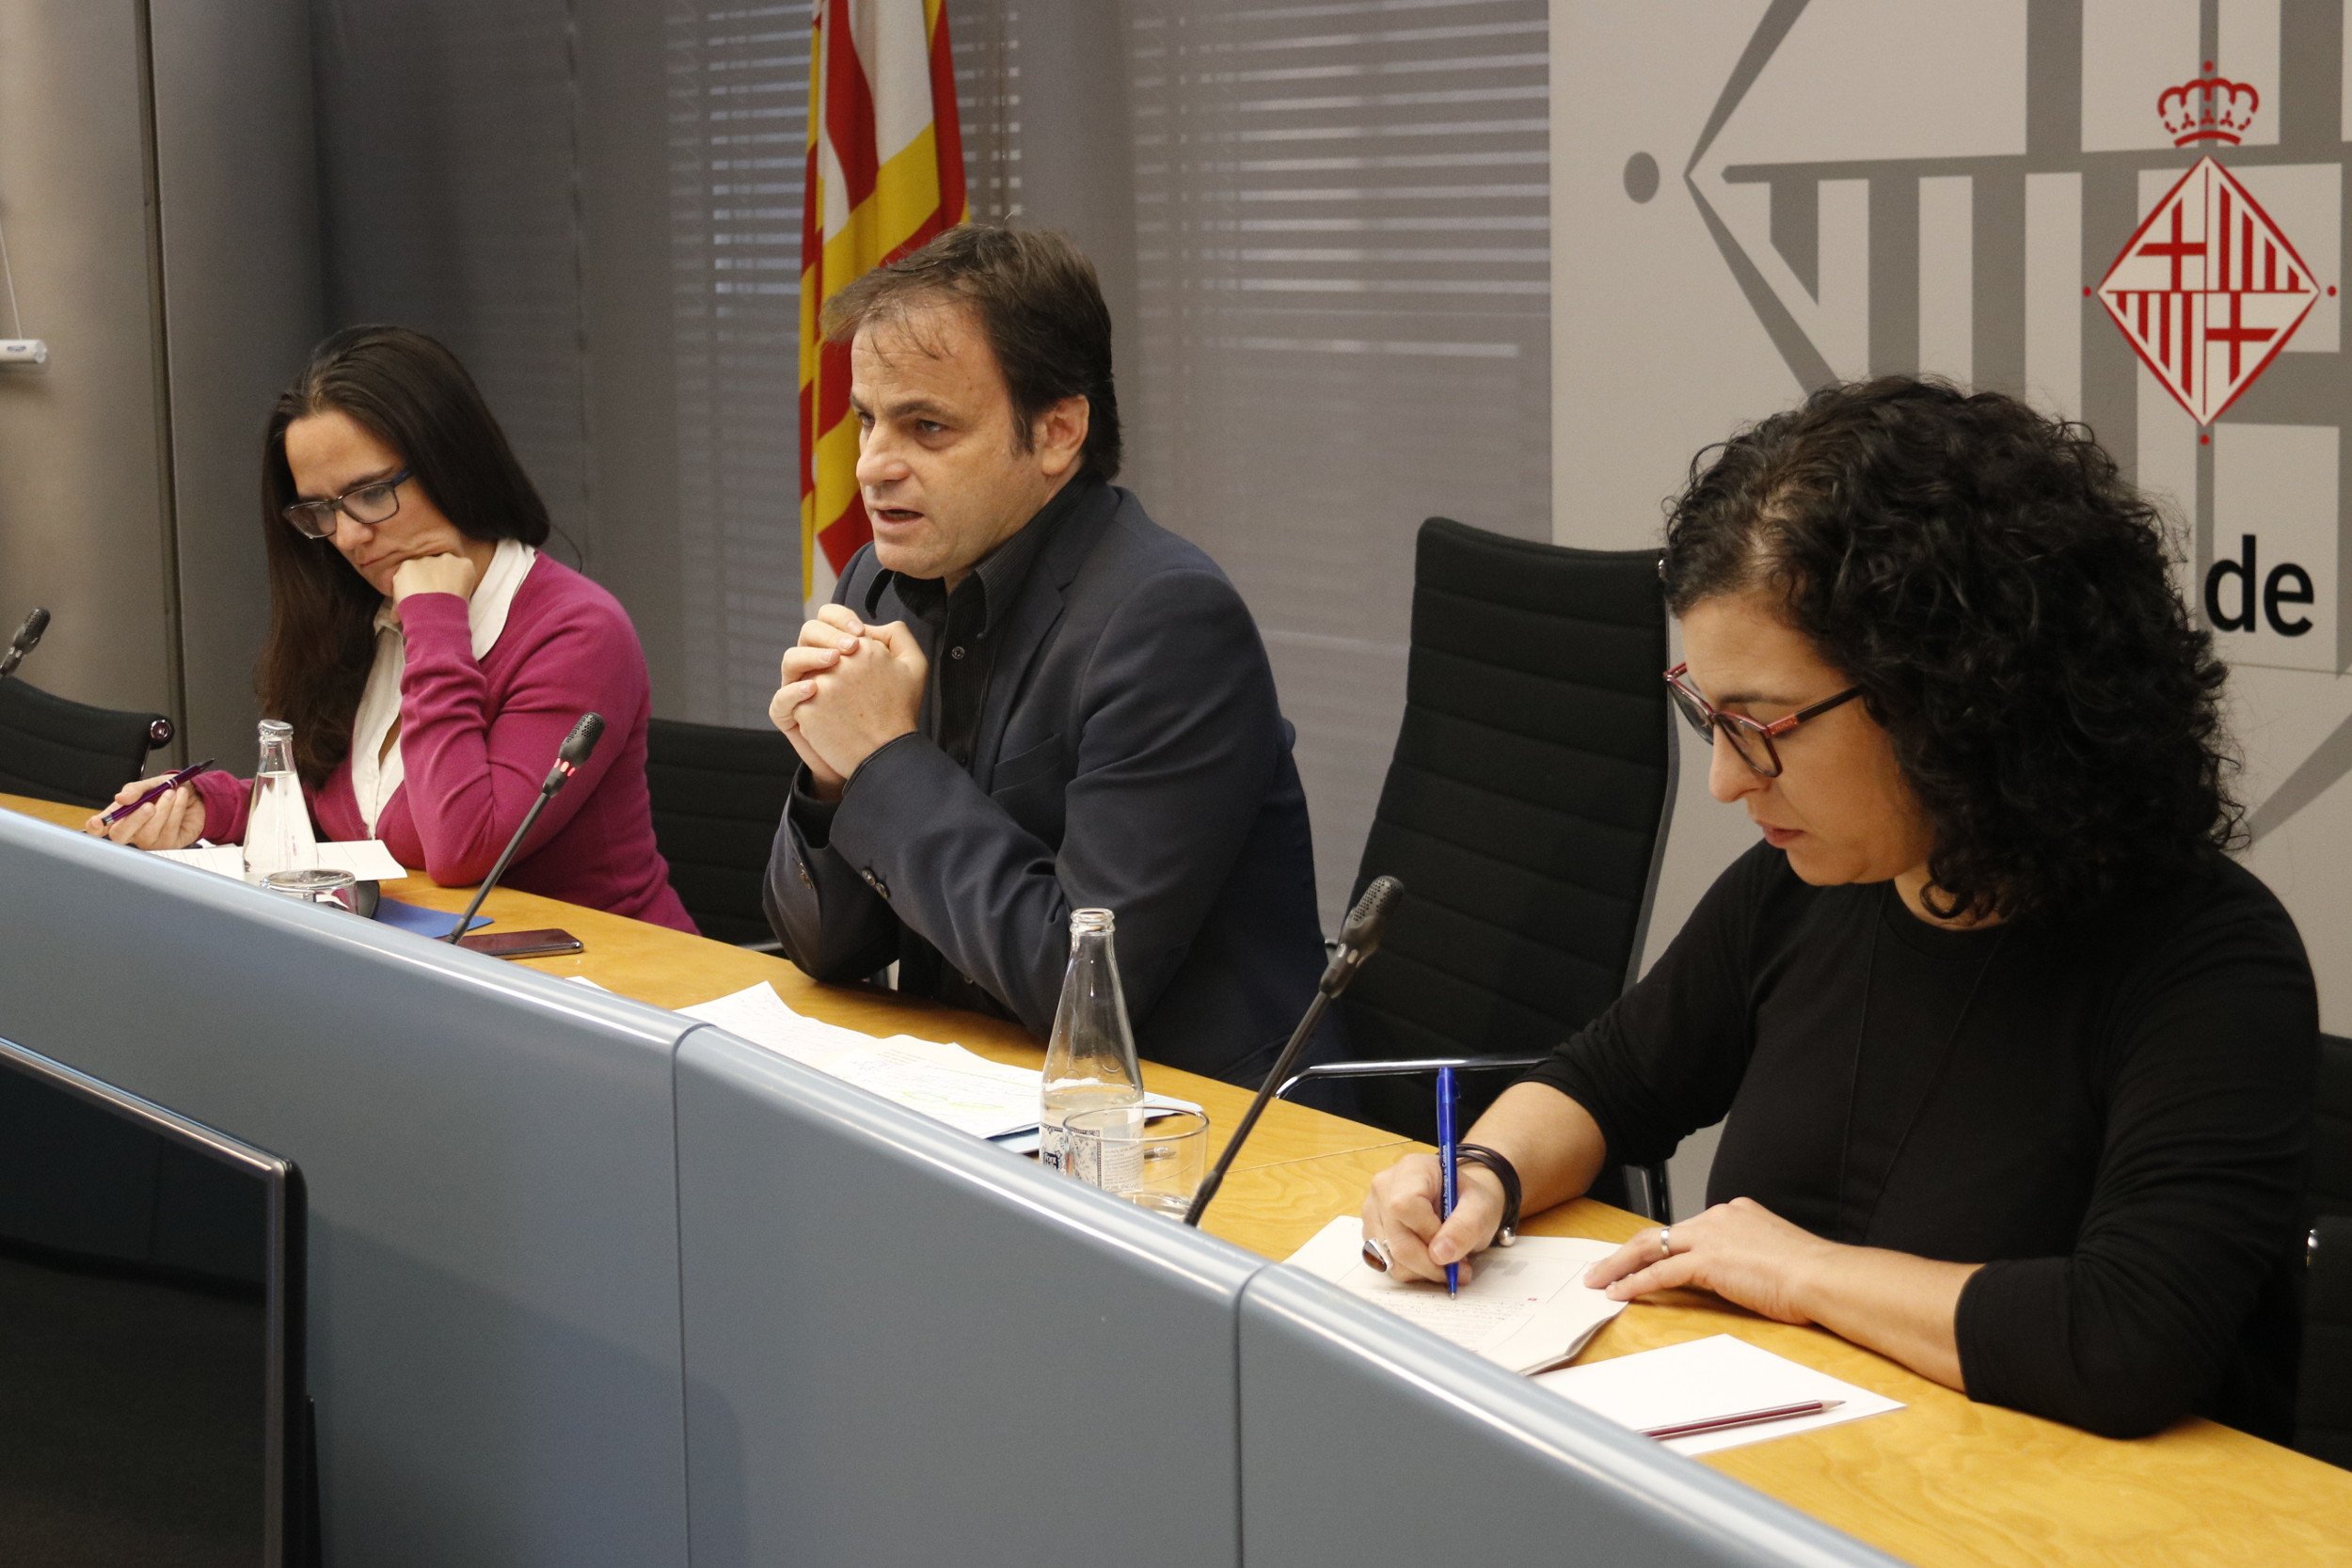 Asens xifra en 15 els ferits en les dues manifestacions de Societat Civil Catalana